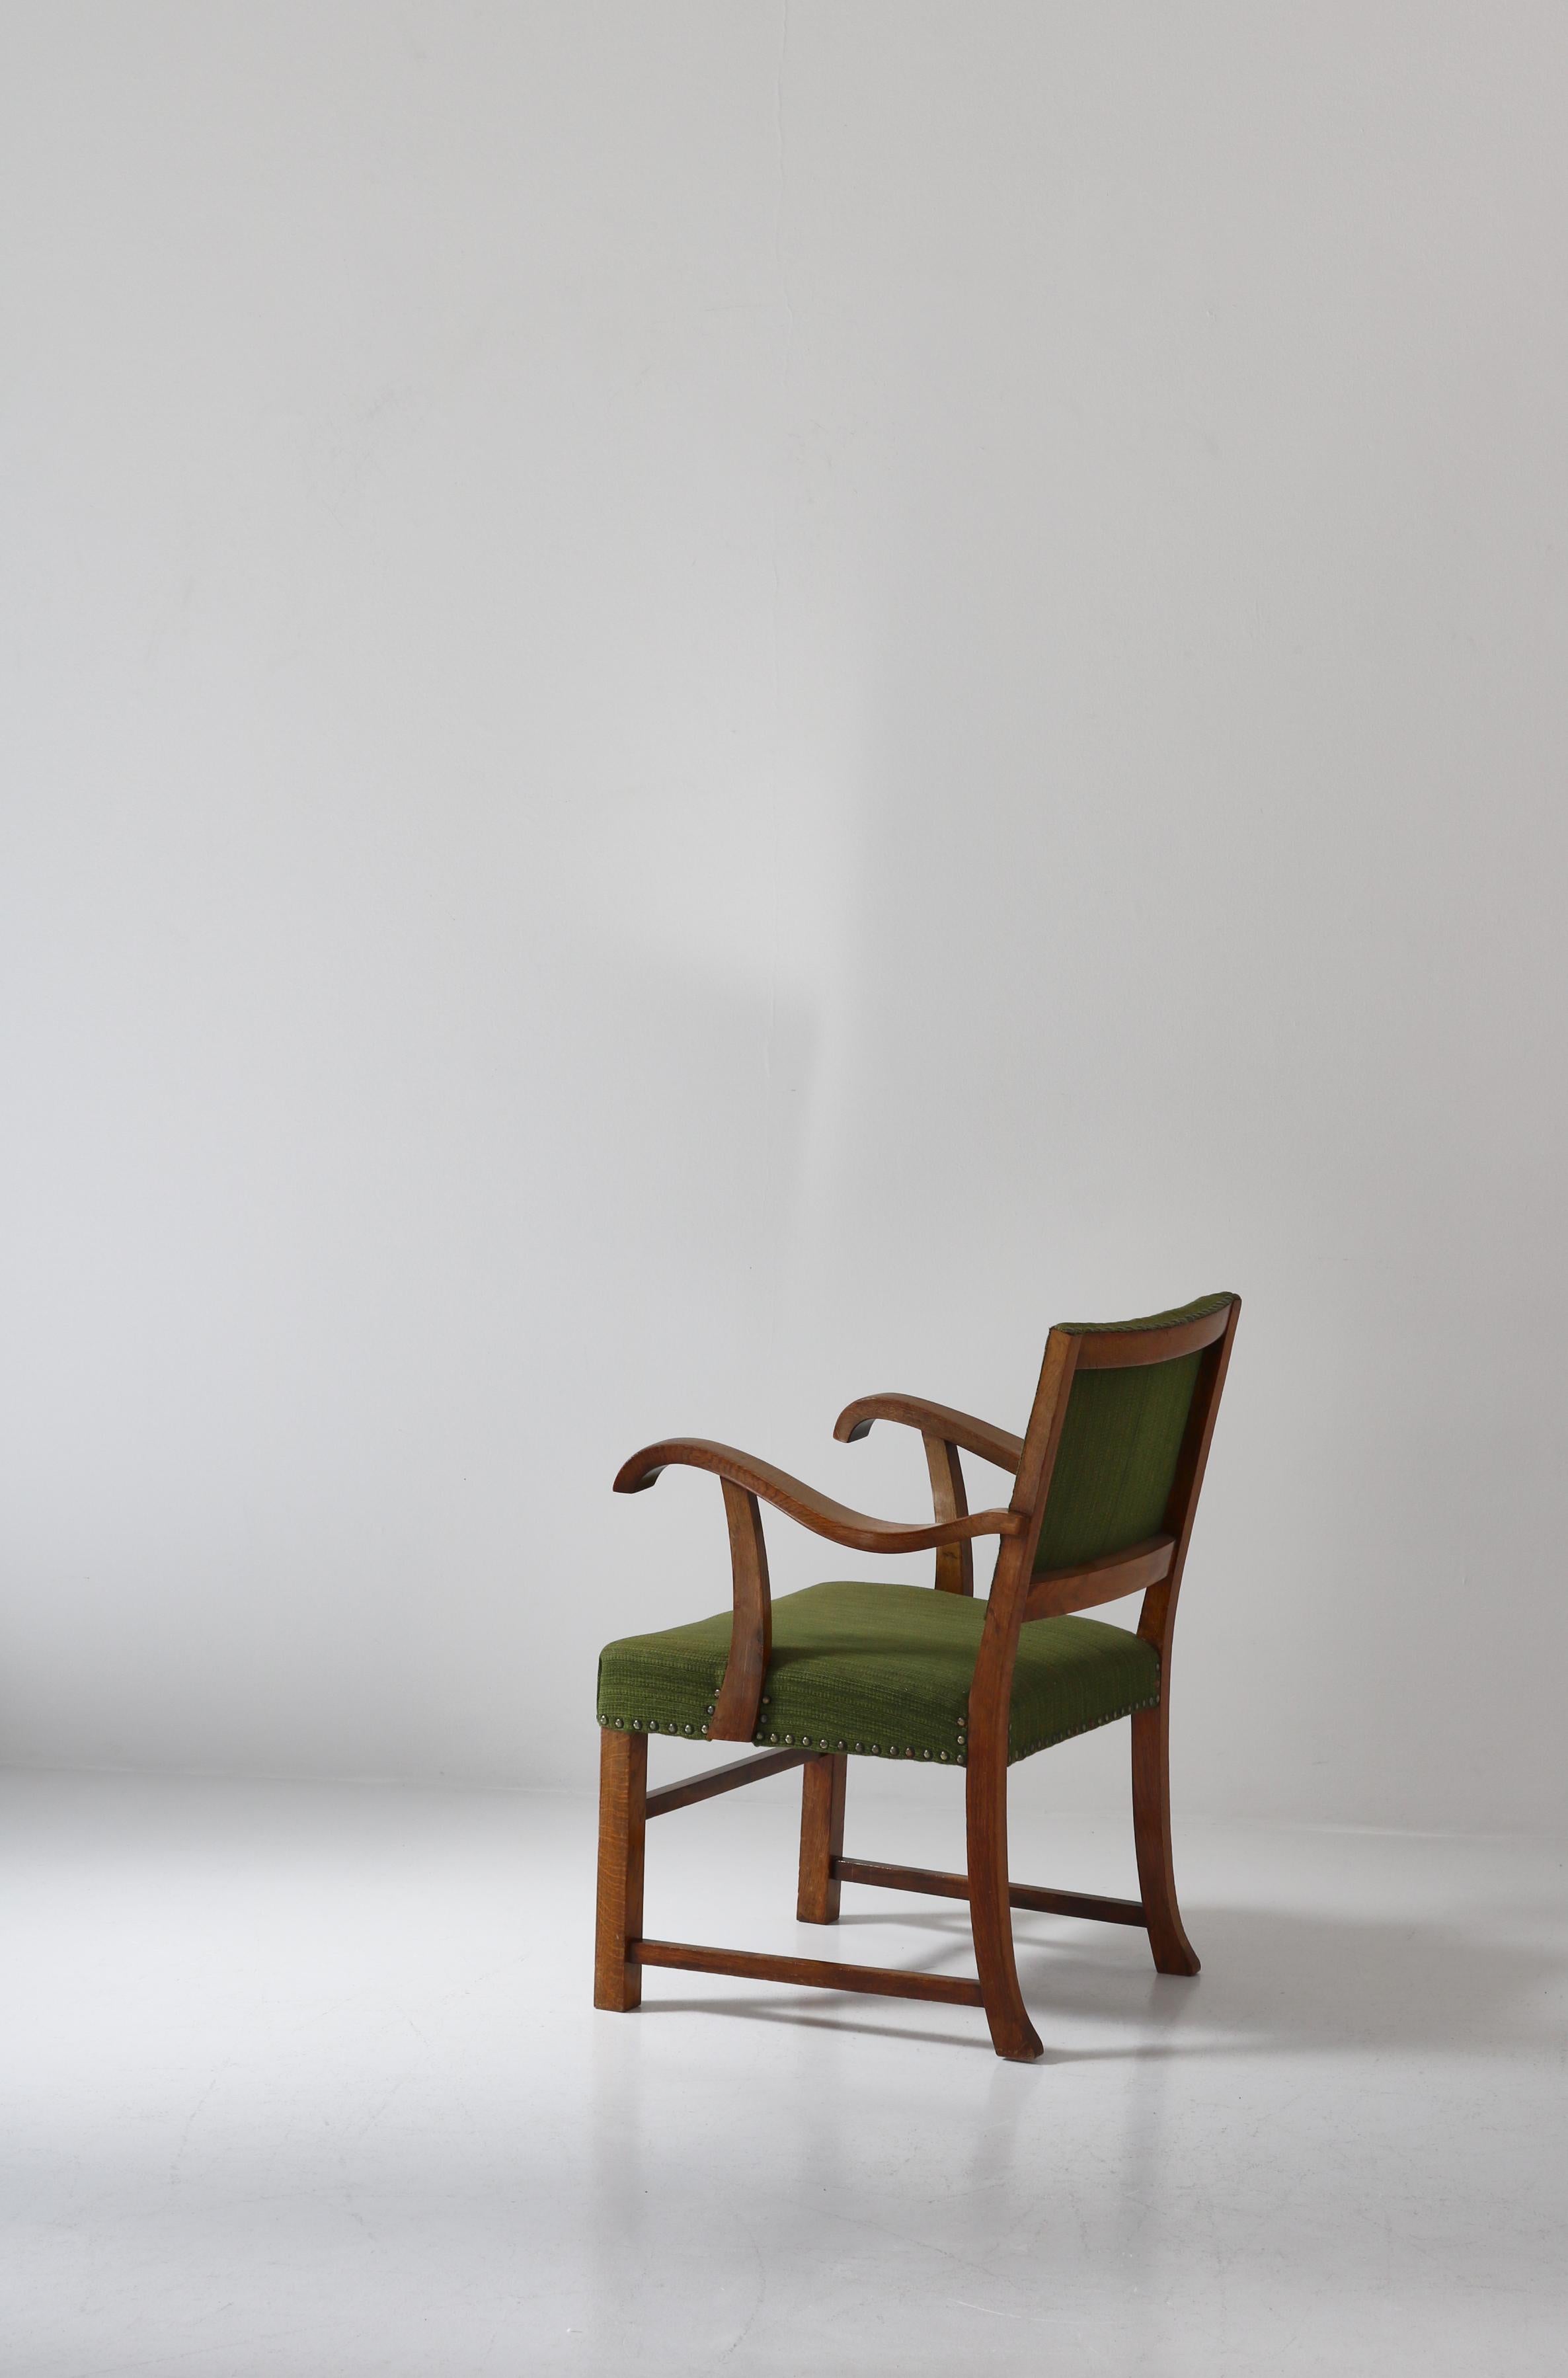 Wool Danish Modern Armchair in Solid Oak by Cabinetmaker S. Thrane, Denmark, 1940s For Sale